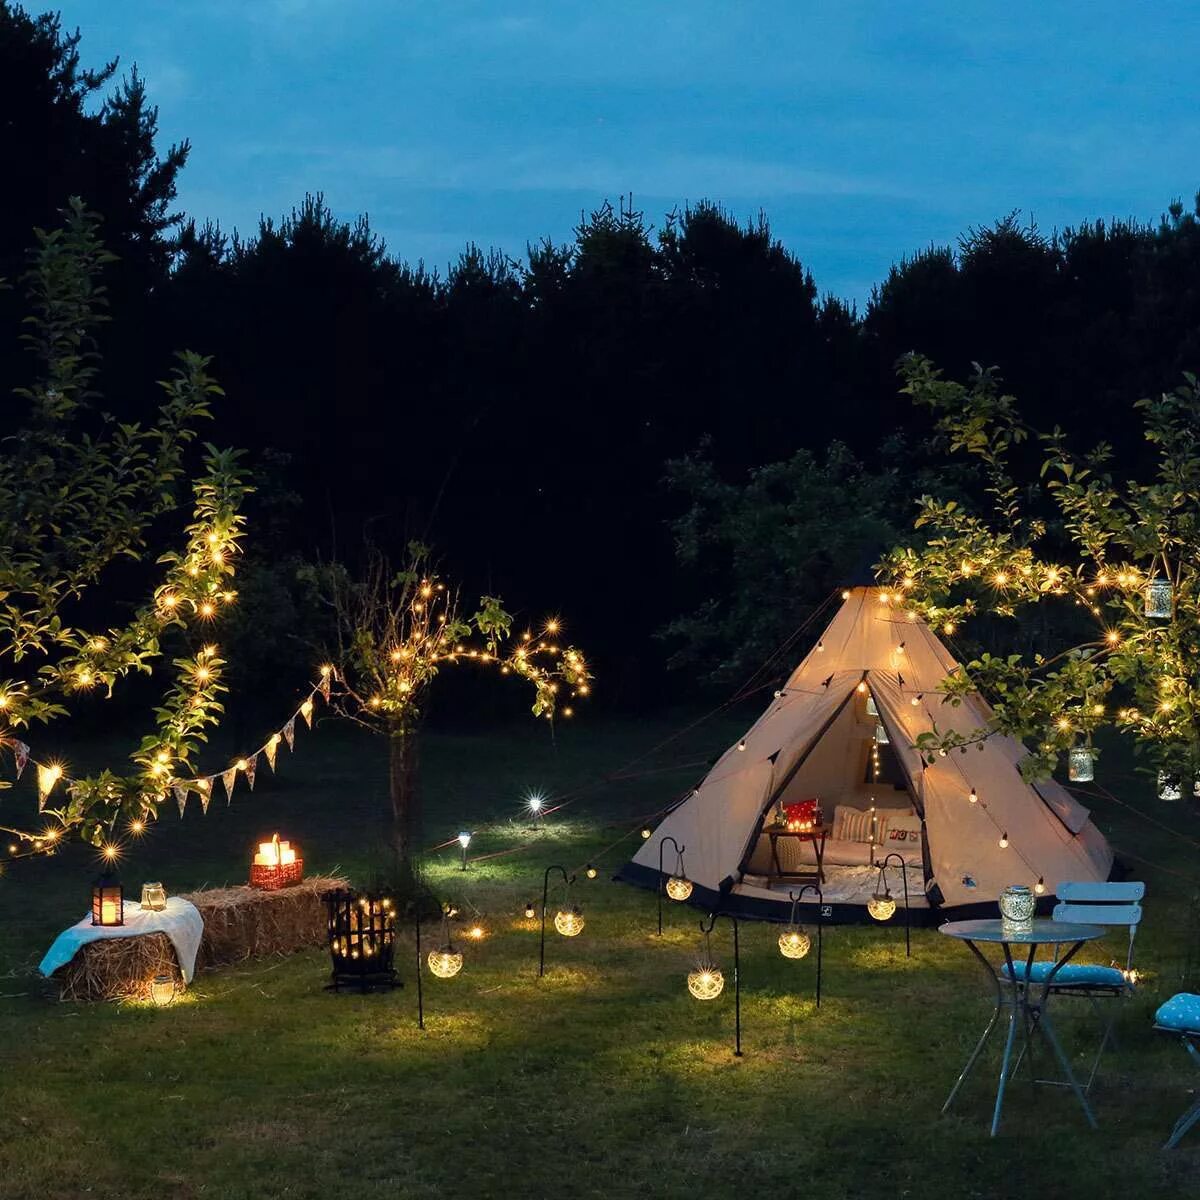 Tent Camping Lights. Solar Camping Light xc50. Уличное освещение кемпинга. Свет для кемпинга. Camping lighting